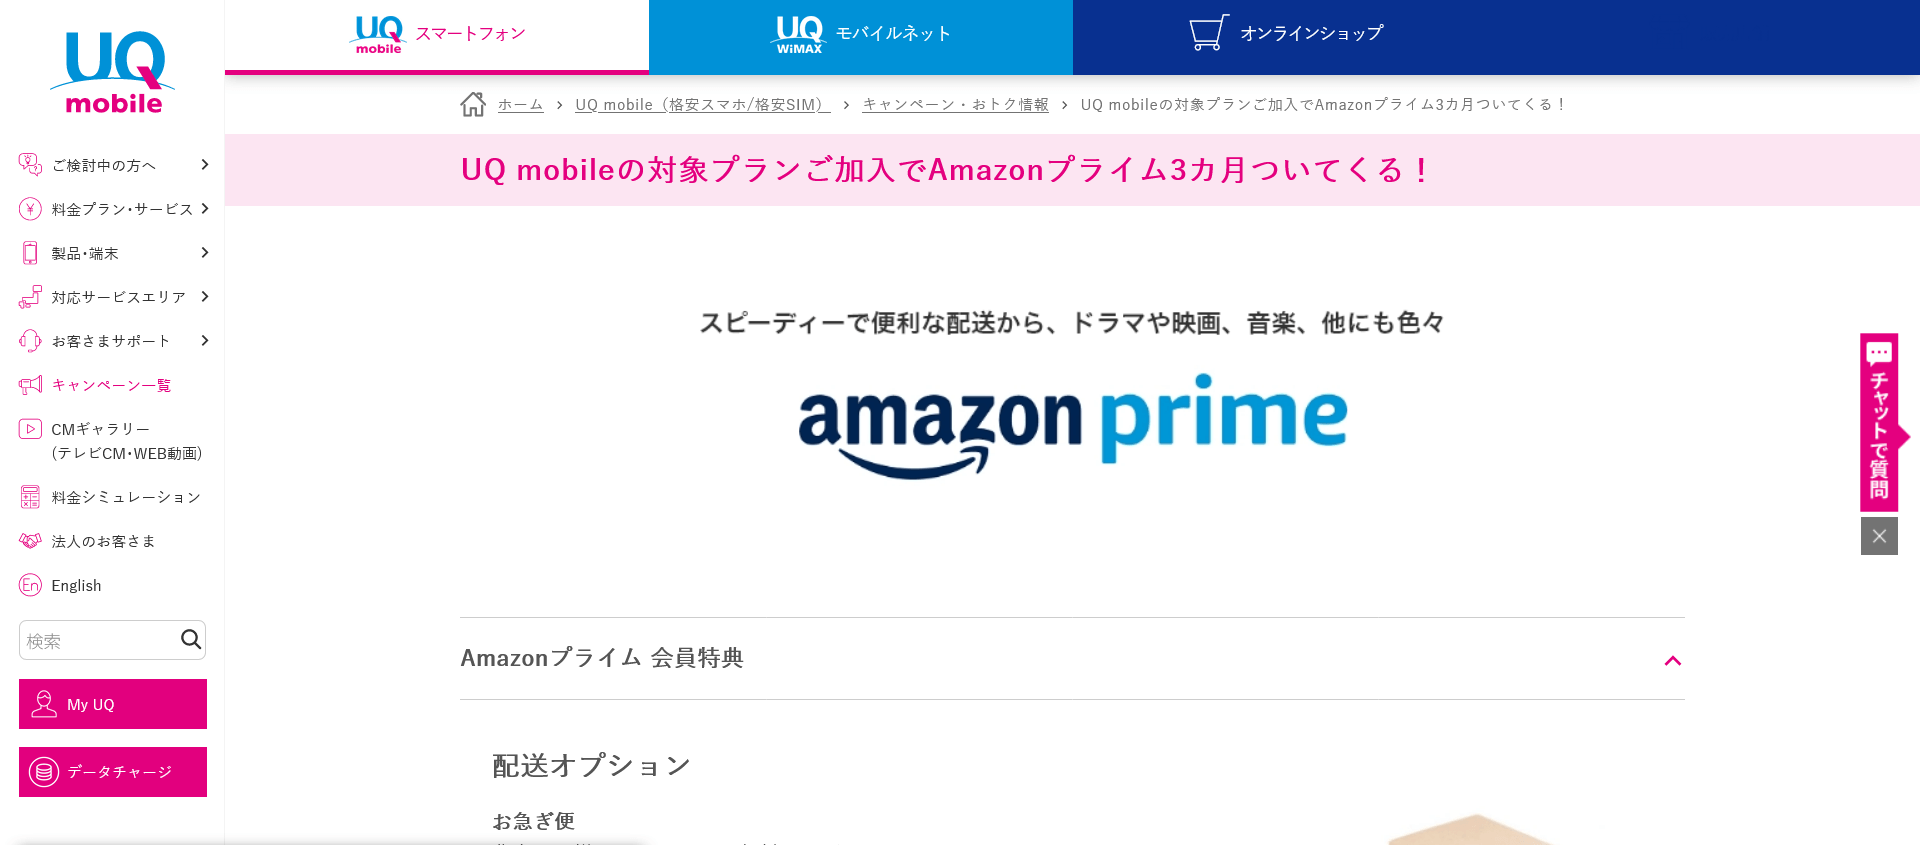 Amazon Prime3ヶ月無料